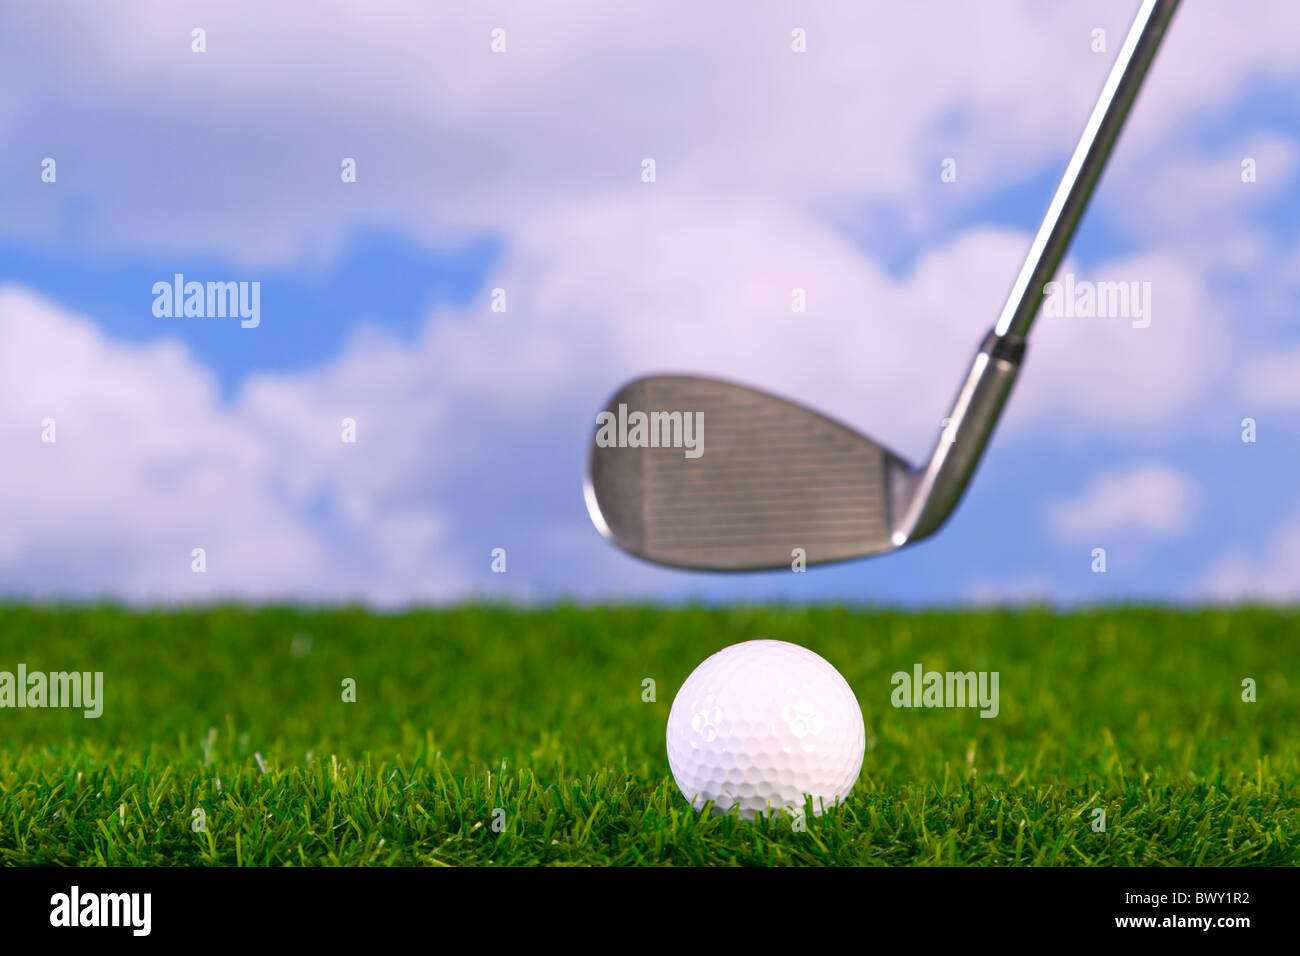 Surface Level Foto eines Eisen Golf Clubs in Mitte Gange, etwa um einen Ball auf dem Fairway zu schlagen. Stockfoto